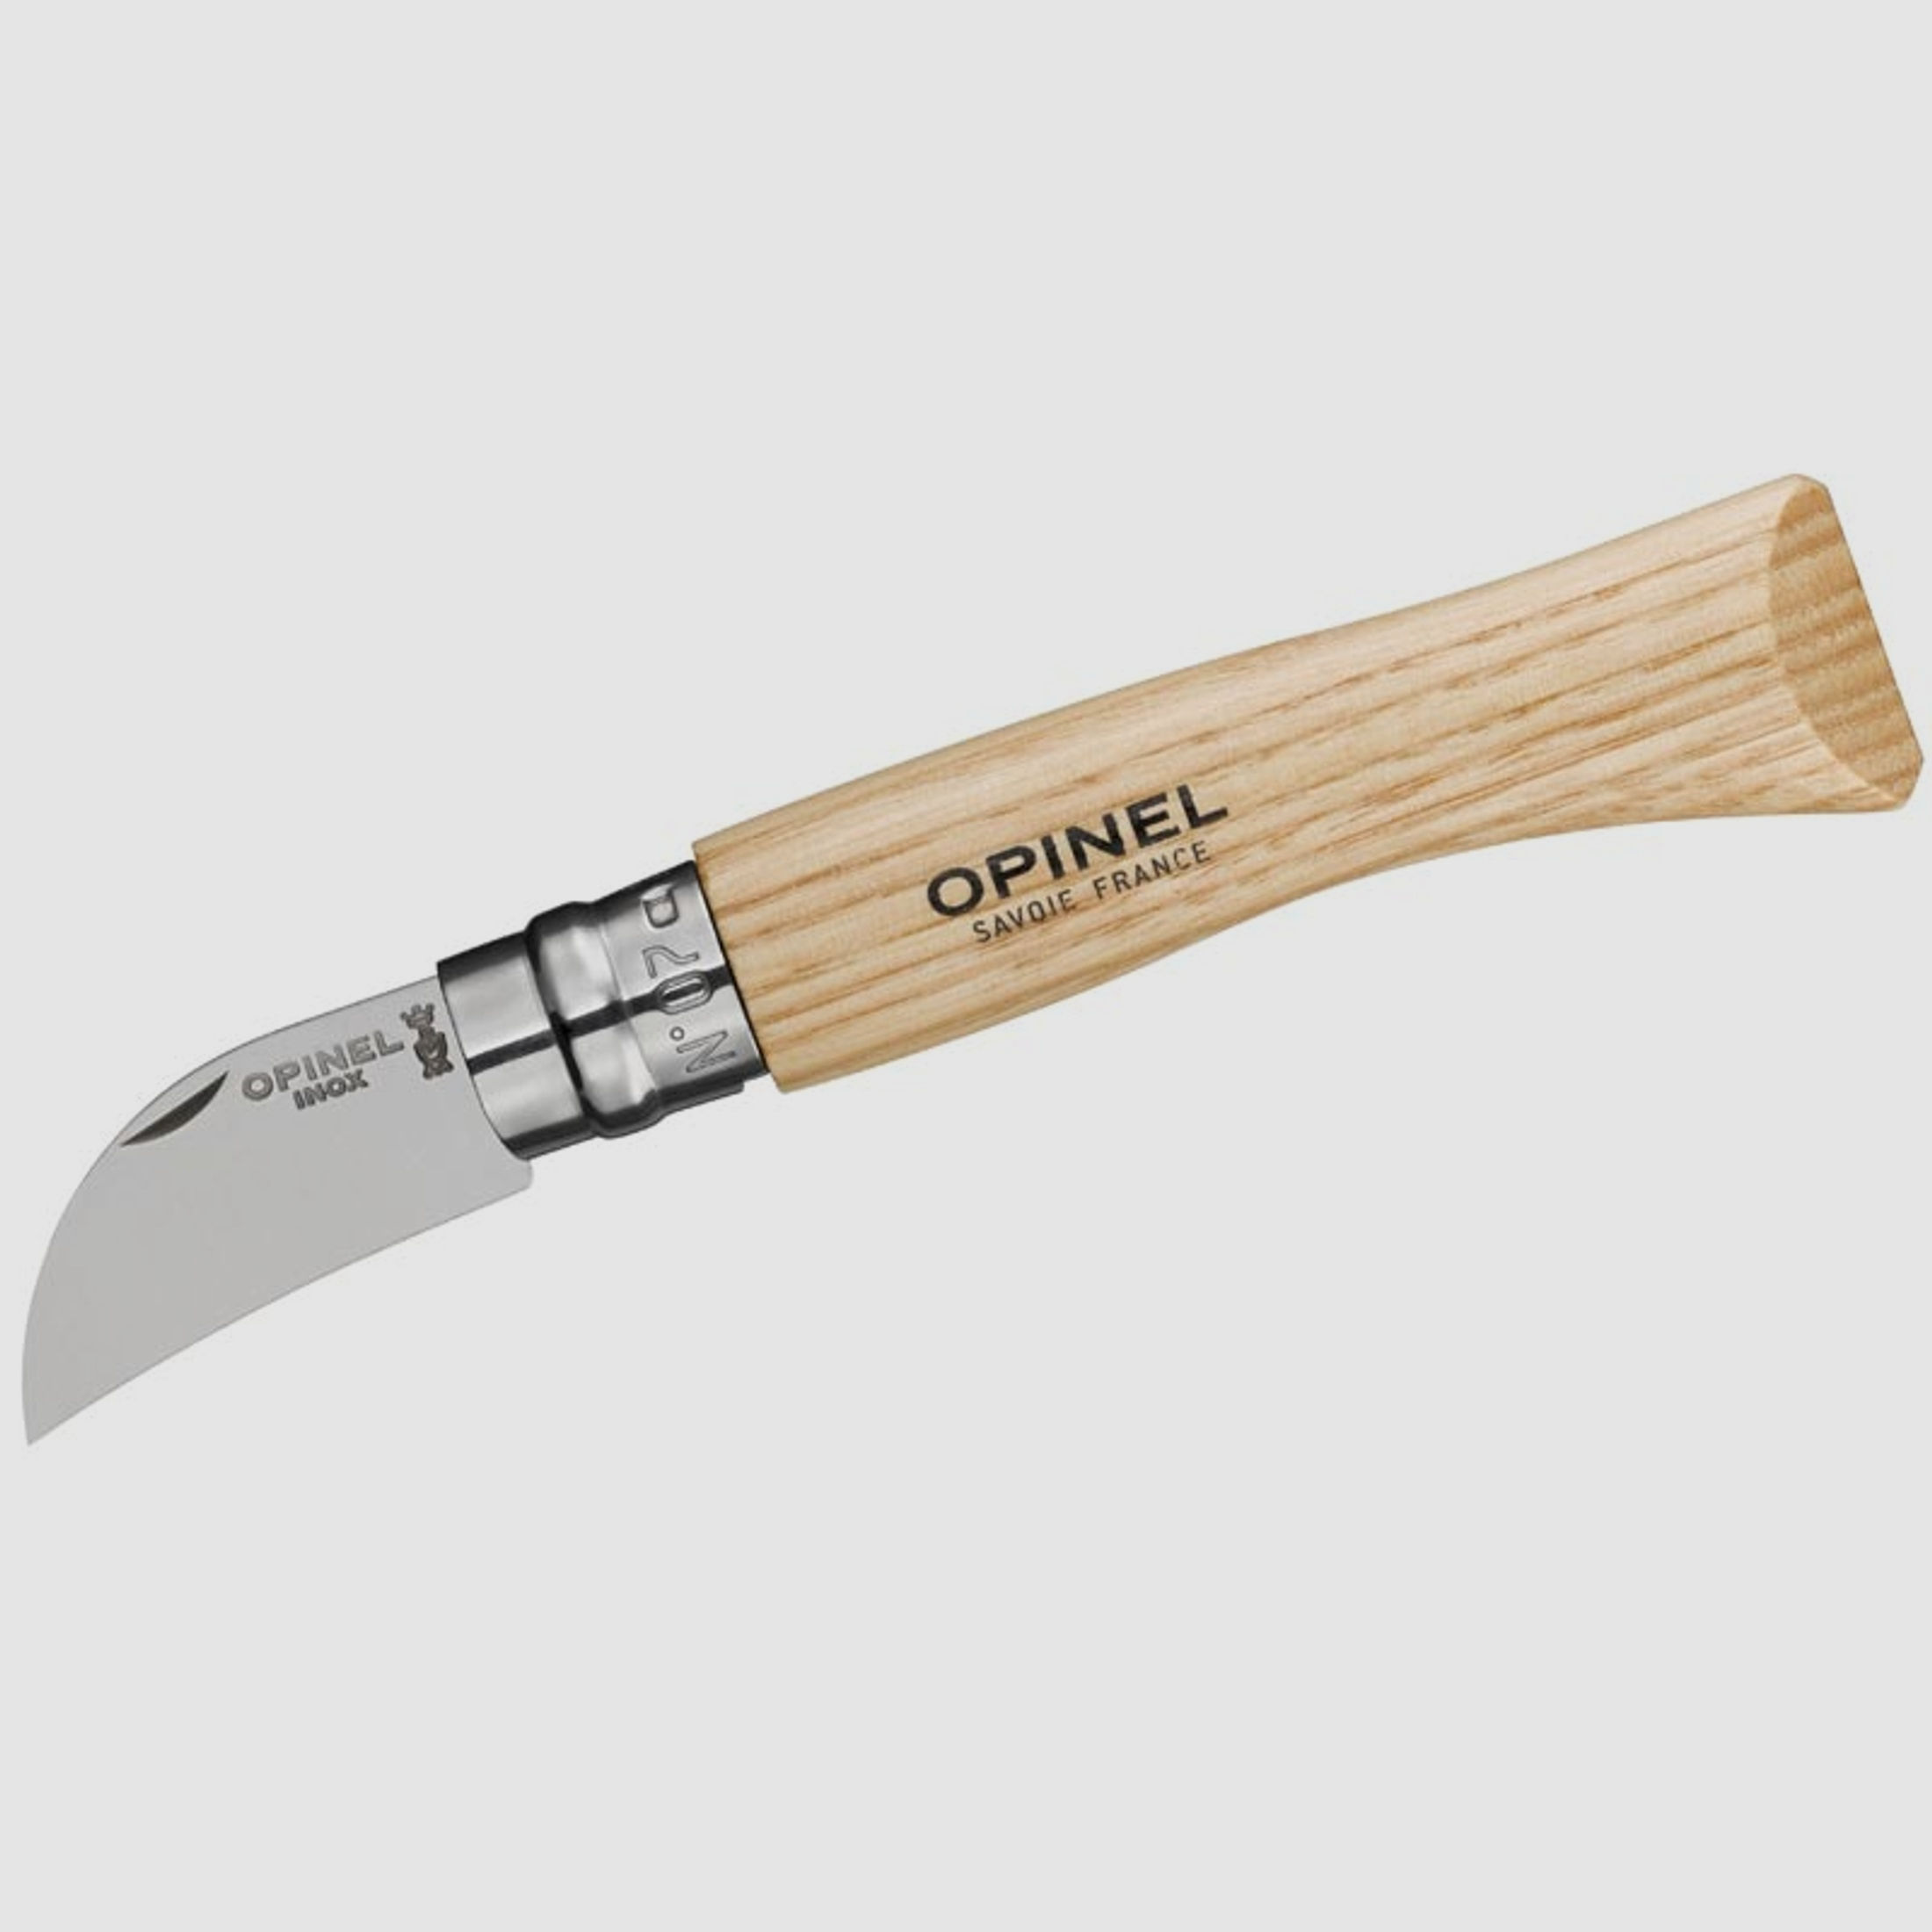 Opinel Messer No 07, rostfrei, Kastanienholz, zum Schneiden, und Schälen von Kastanien und Oliven, Virobloc